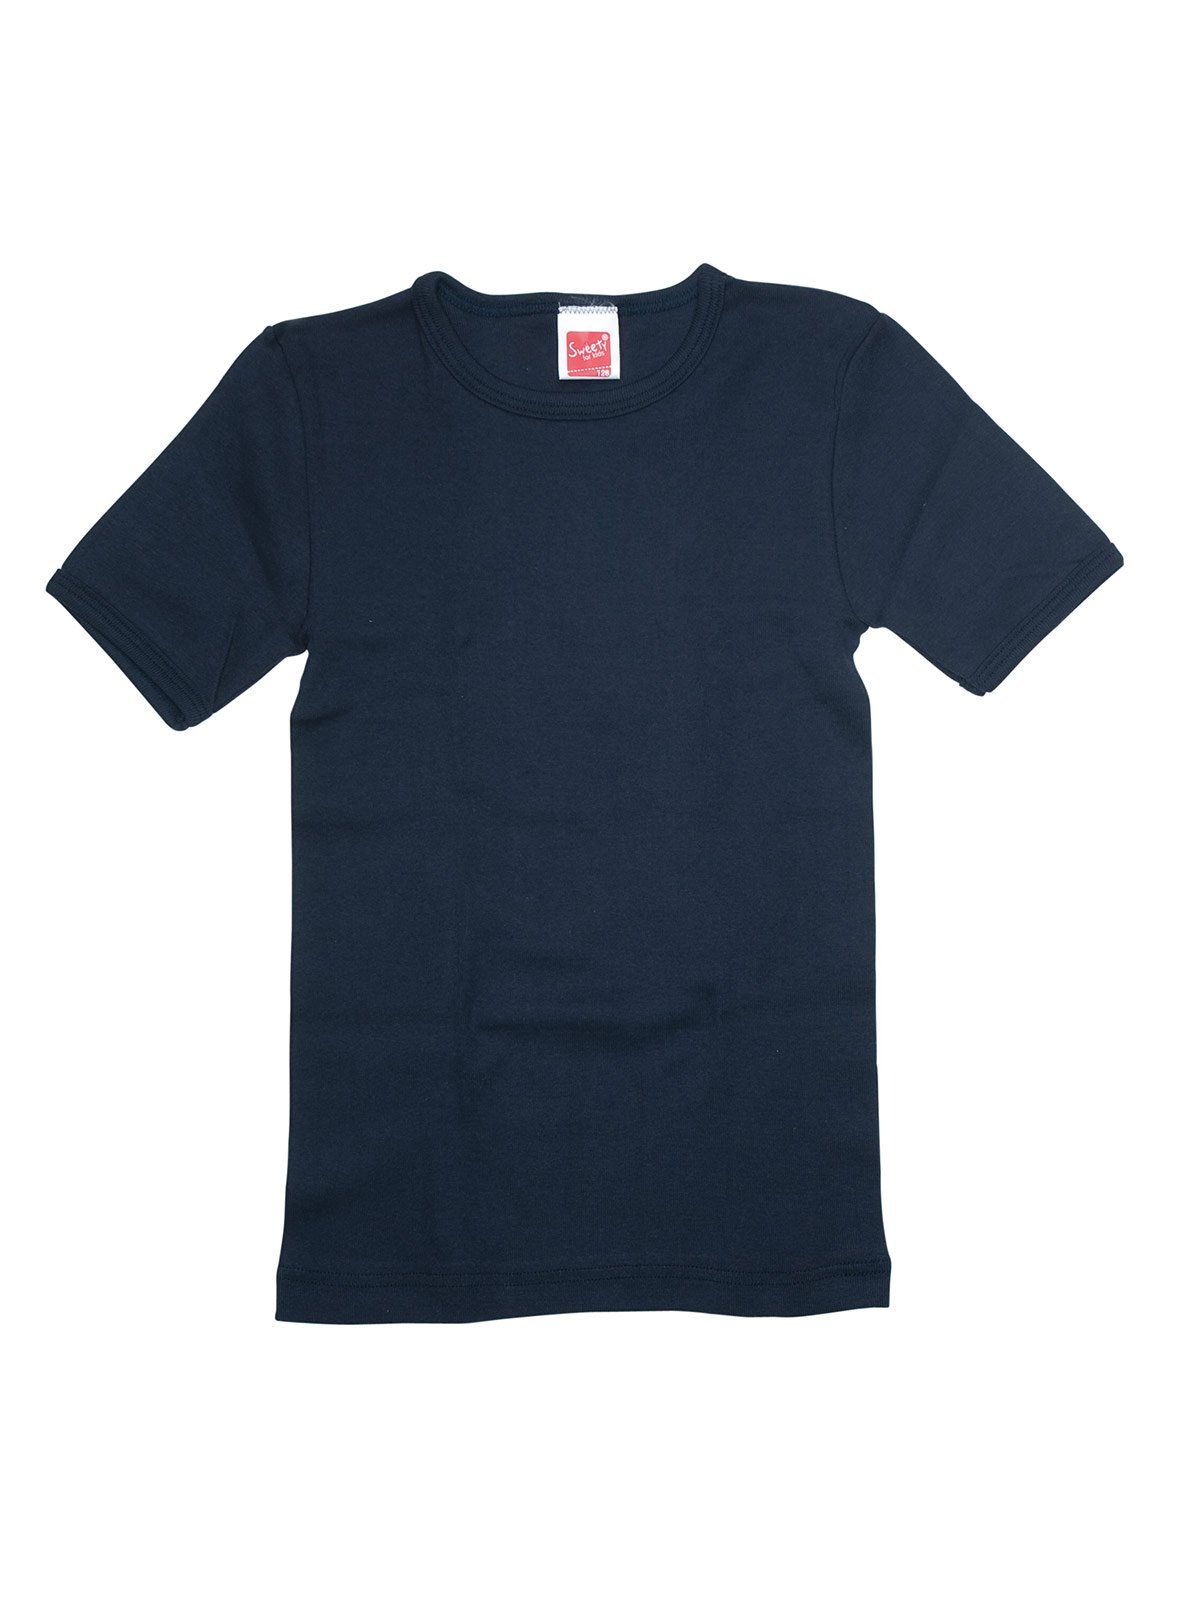 (Spar-Set, 2-St) Shirt hohe Sparpack Winterwäsche Kids weiss Sweety Achselhemd for Kinder navy Markenqualität 2er